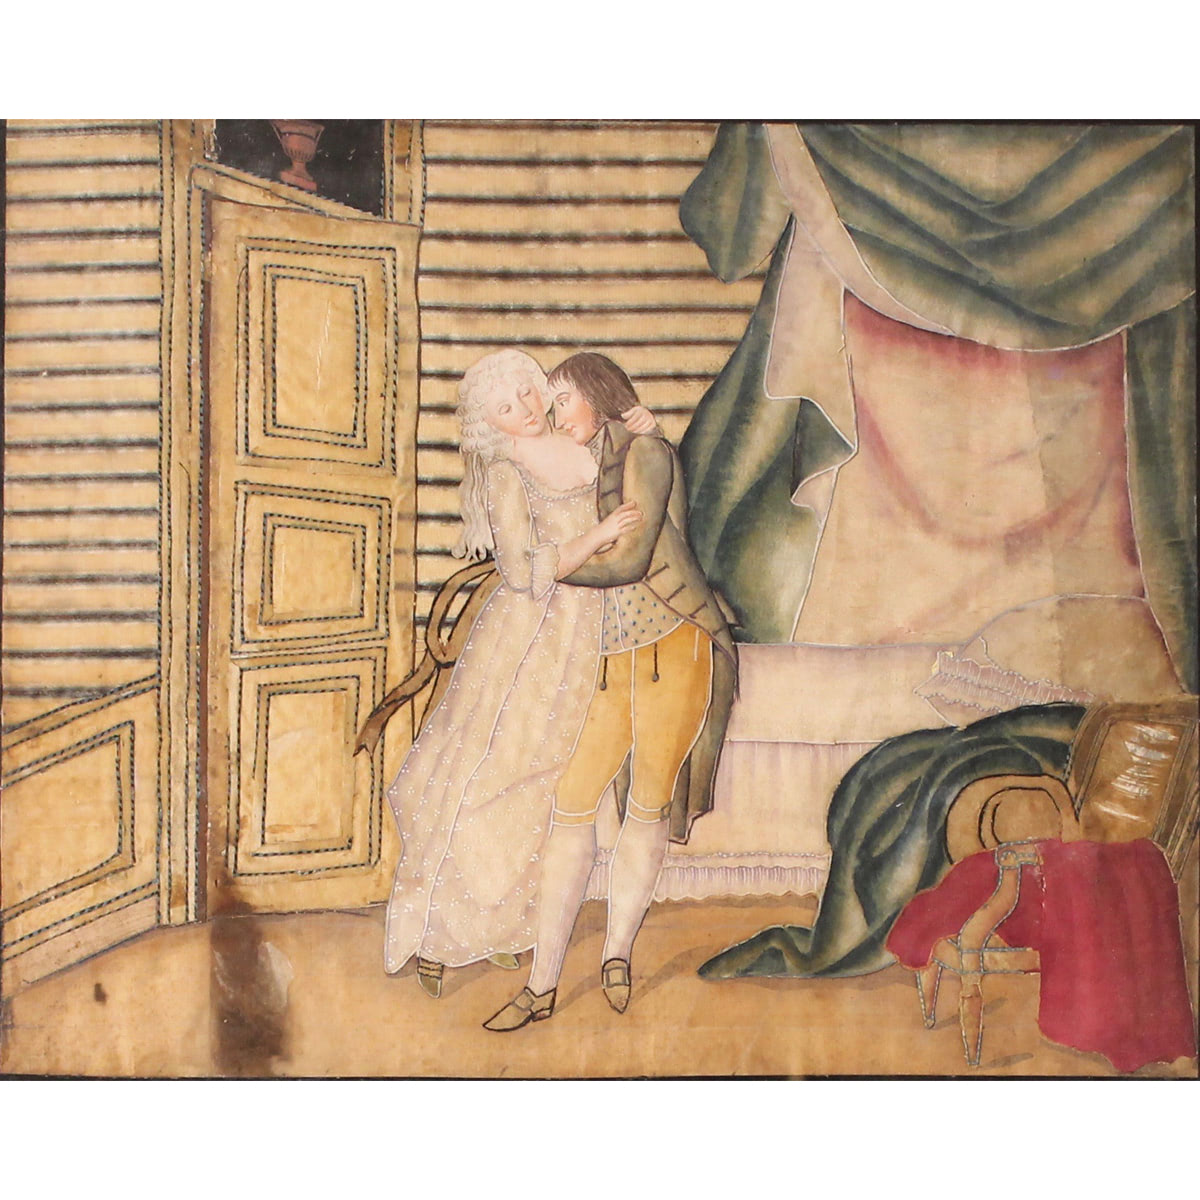 Scuola francese del secolo XIX "Scene galanti" - French school of the 19th century "Galant scenes"